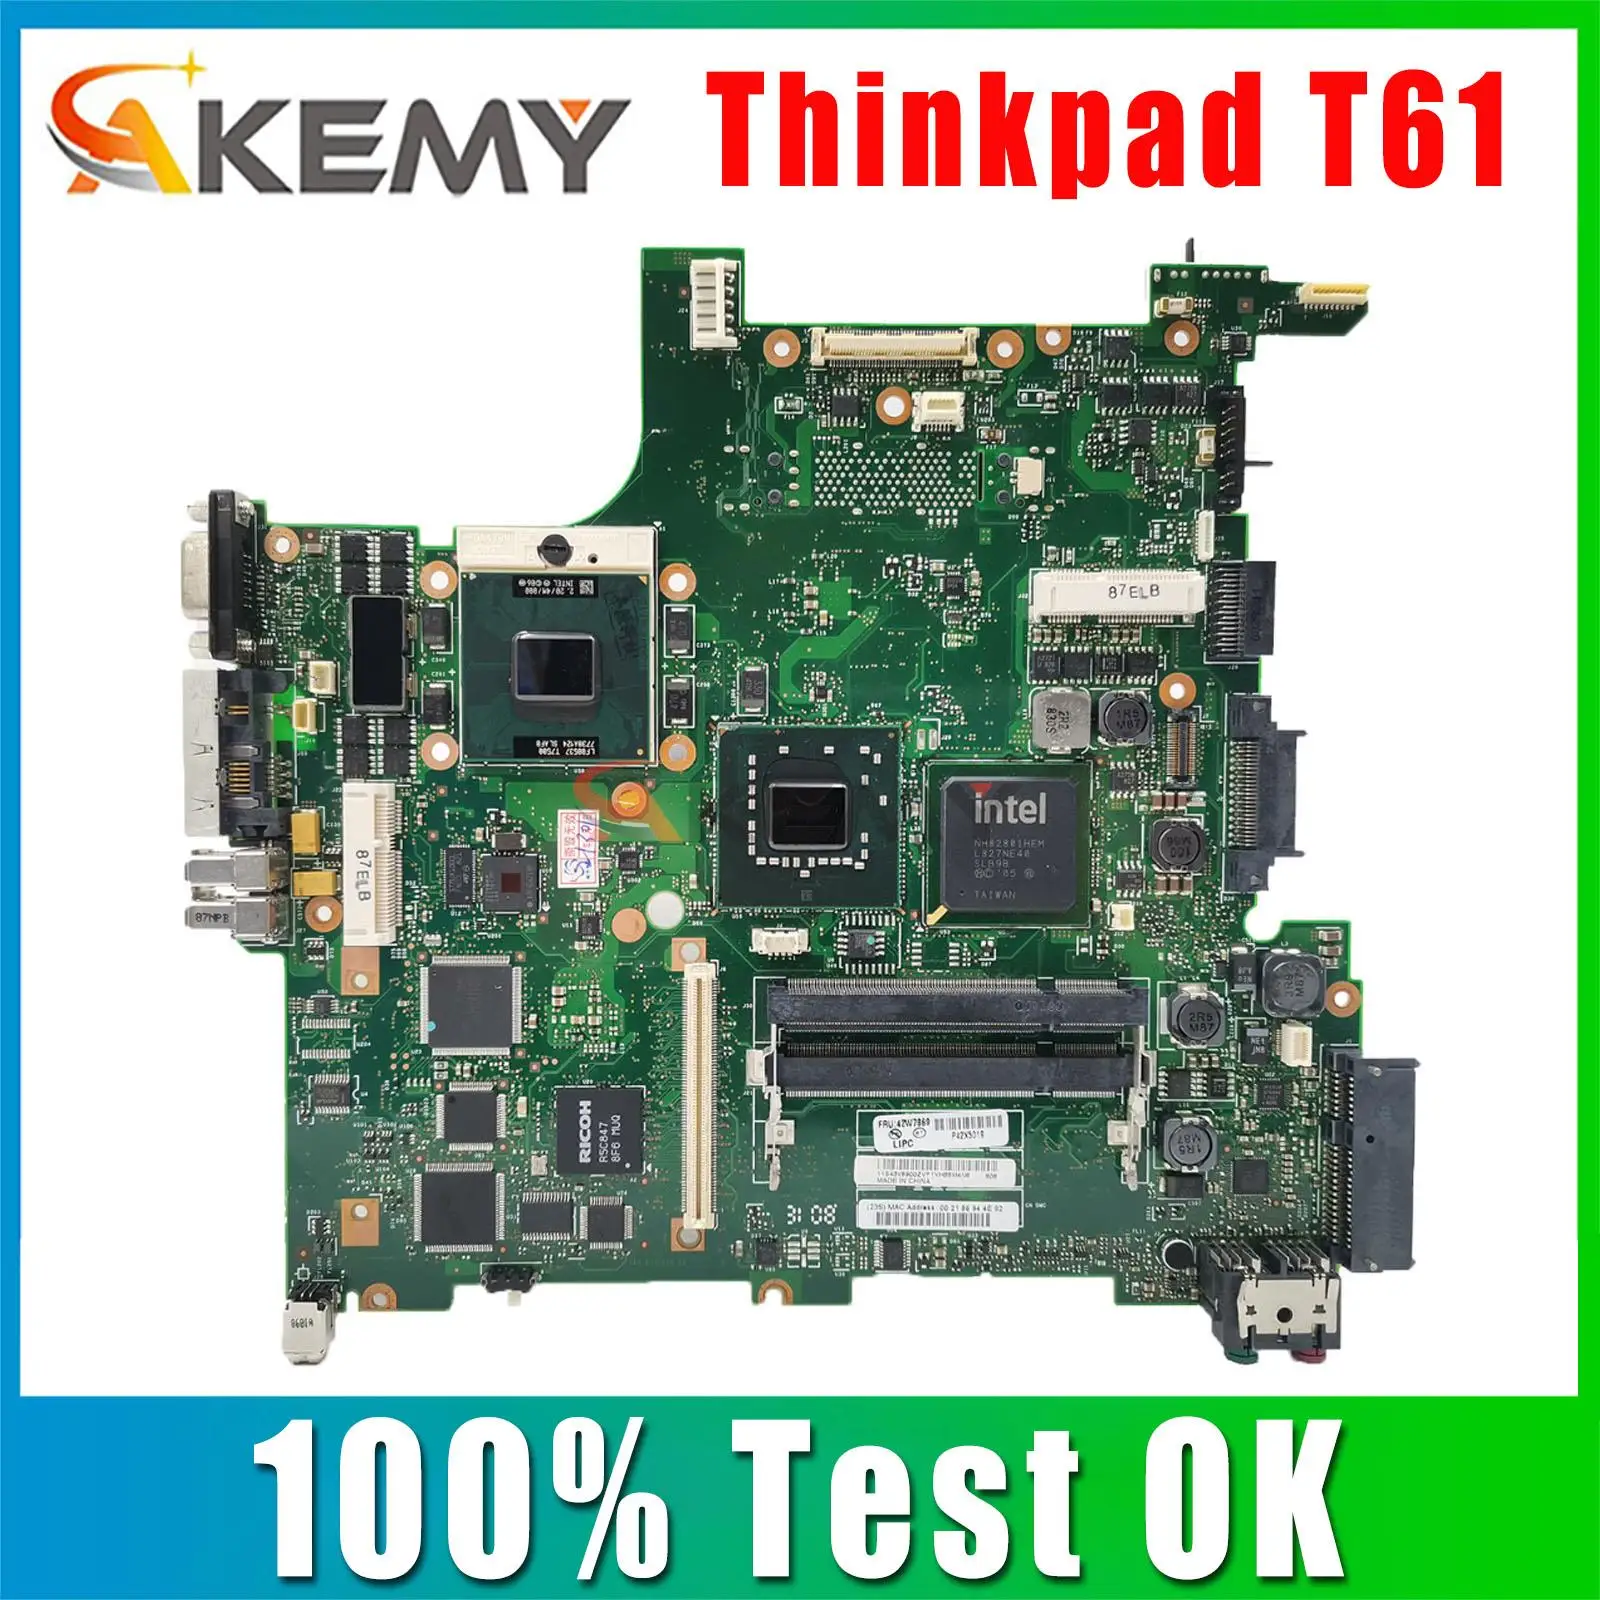 

41W1487 42W7868 42W3782 42W7869 42W7866 14.1'' Inch For Lenovo Thinkpad T61 Motherboard System Board DDR2 Free CPU